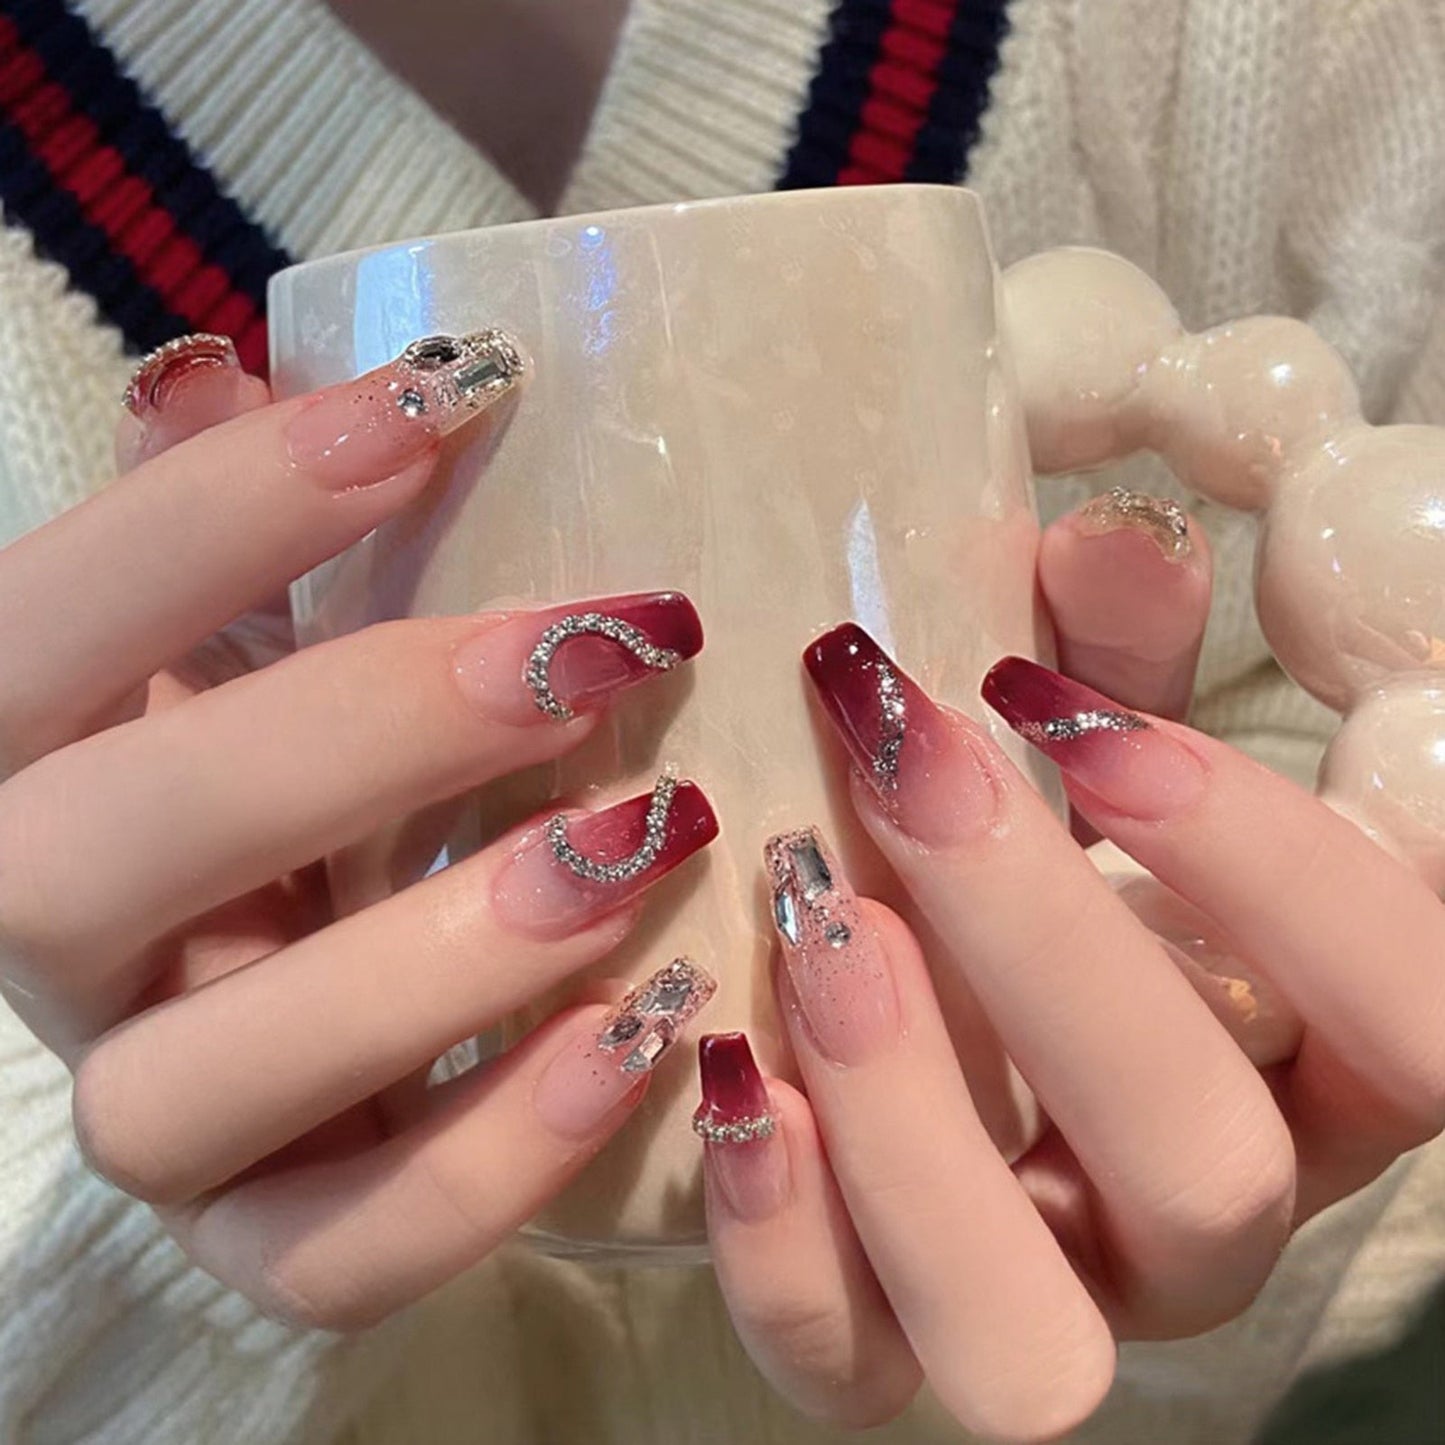 24Pcs Full Cover Fake Nails with 3D White Flower Design Full Cover Press on Fingernails Tips Coffin Head Glitter Red False Nails